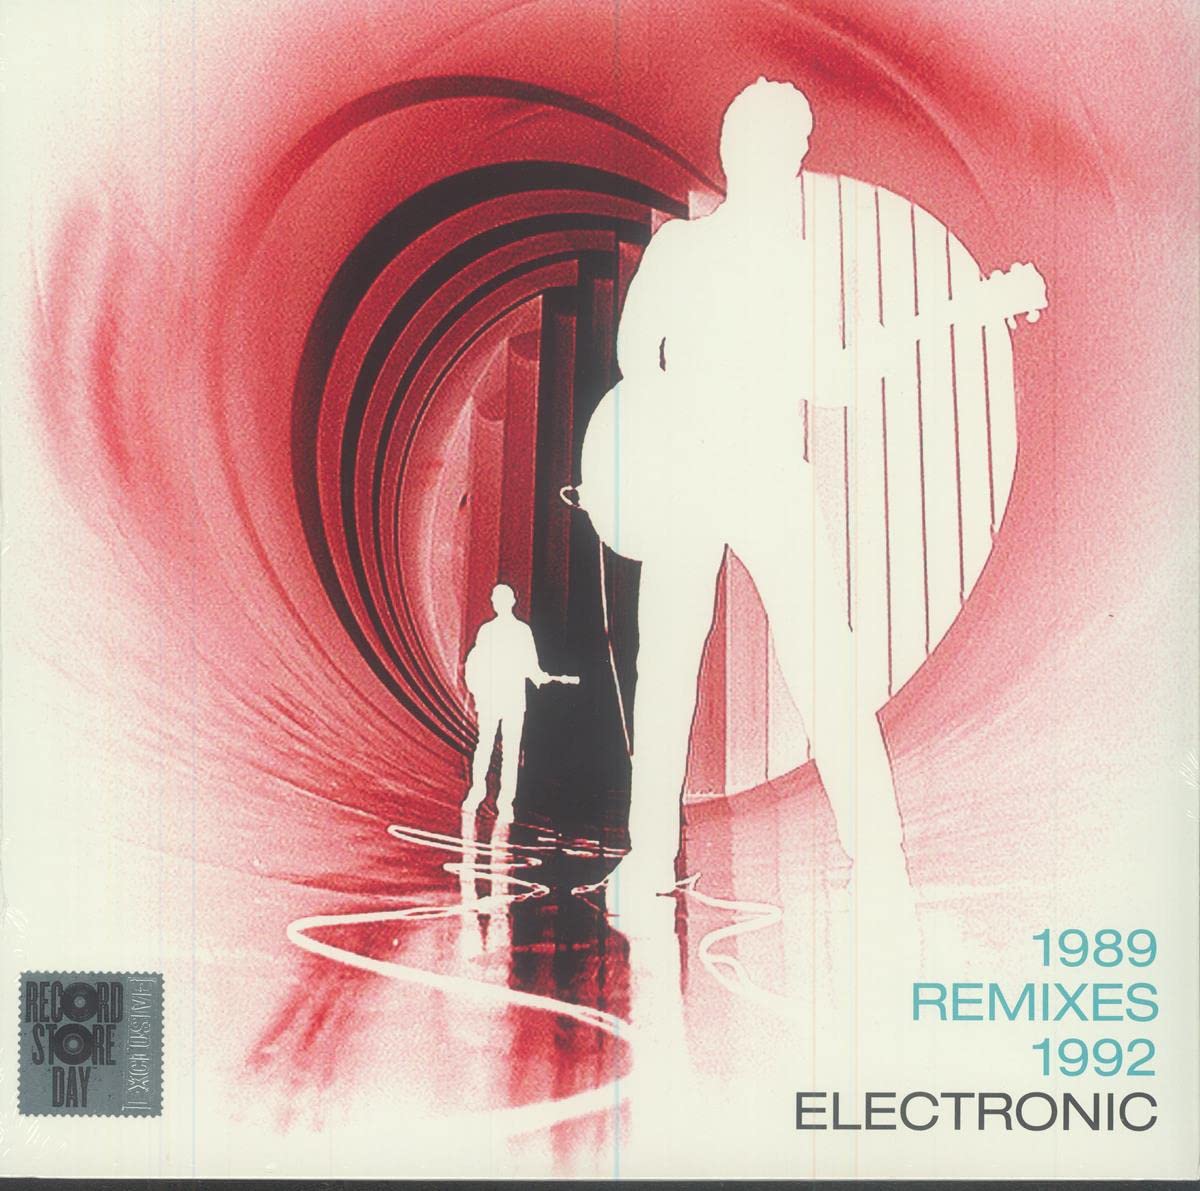 0602458319859 виниловая пластинкаbrown clifford memorial album Виниловая пластинка Electronic, 1989 Remixes 1992 EP (V12) (0190296514968)